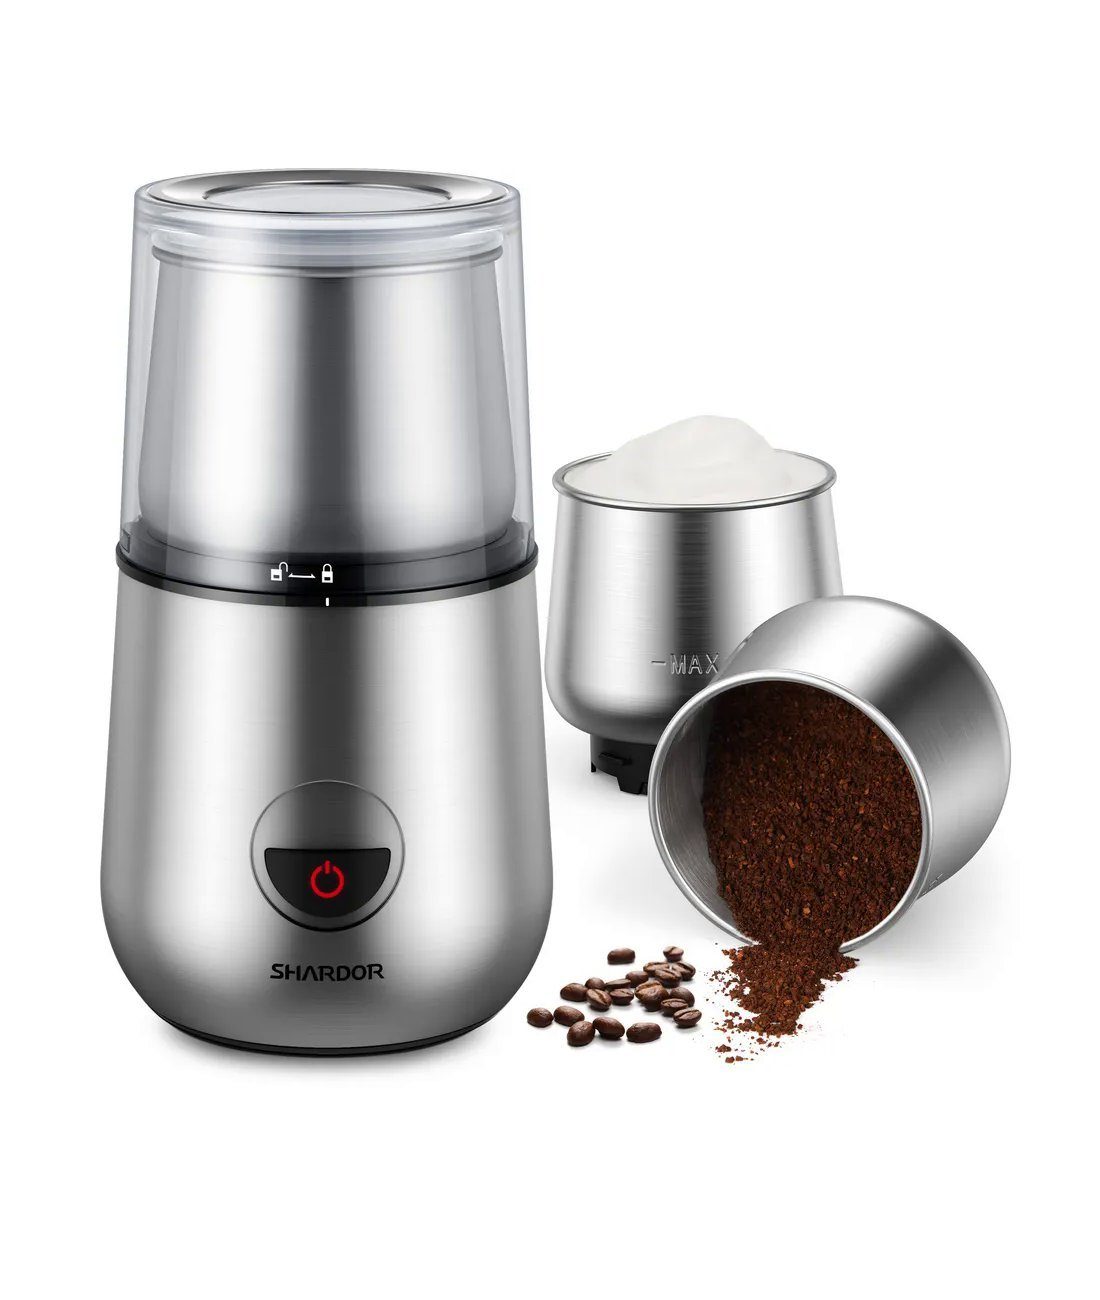 Shardor Kaffeemühle SP7433 Elektrische Kaffeemühle, 150 Watt, 150 W, Milchaufschäumer, Mahlen von Kaffeebohnen o.ä., Start per Knopfdruck mit Mahl- und Aufschäumfunktion